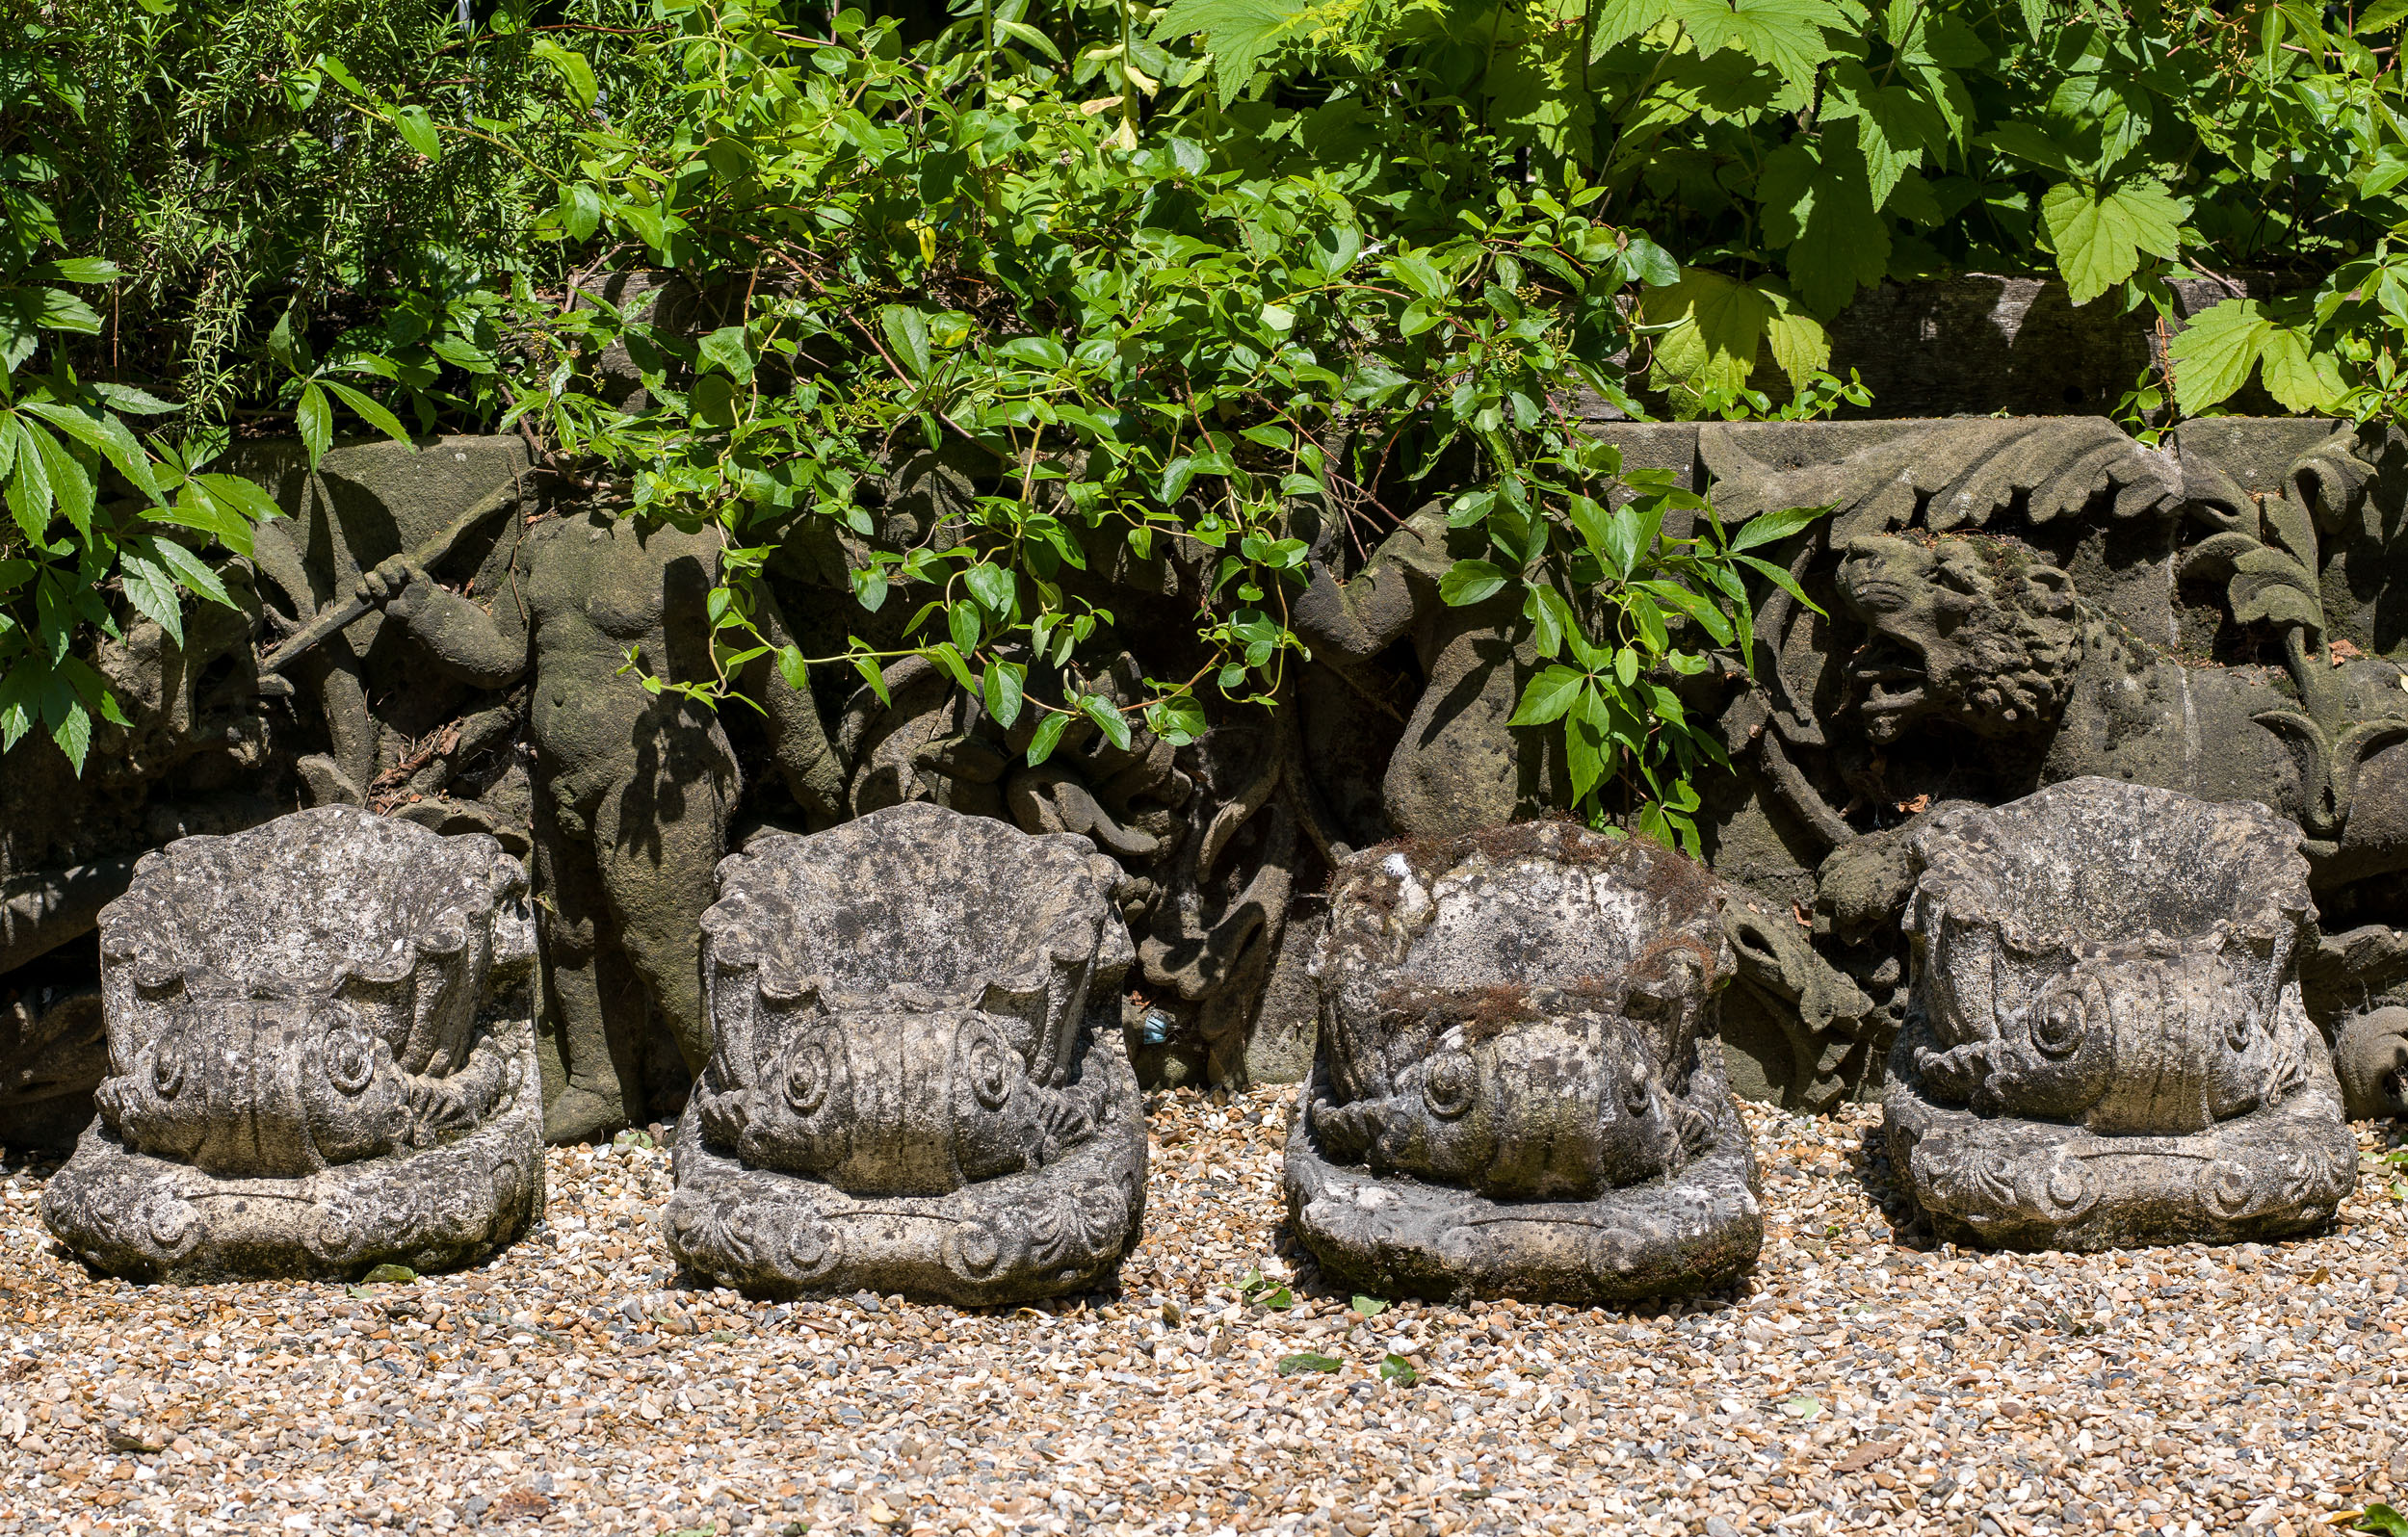 A Cornucopia Style Set of Four Stone Bowls